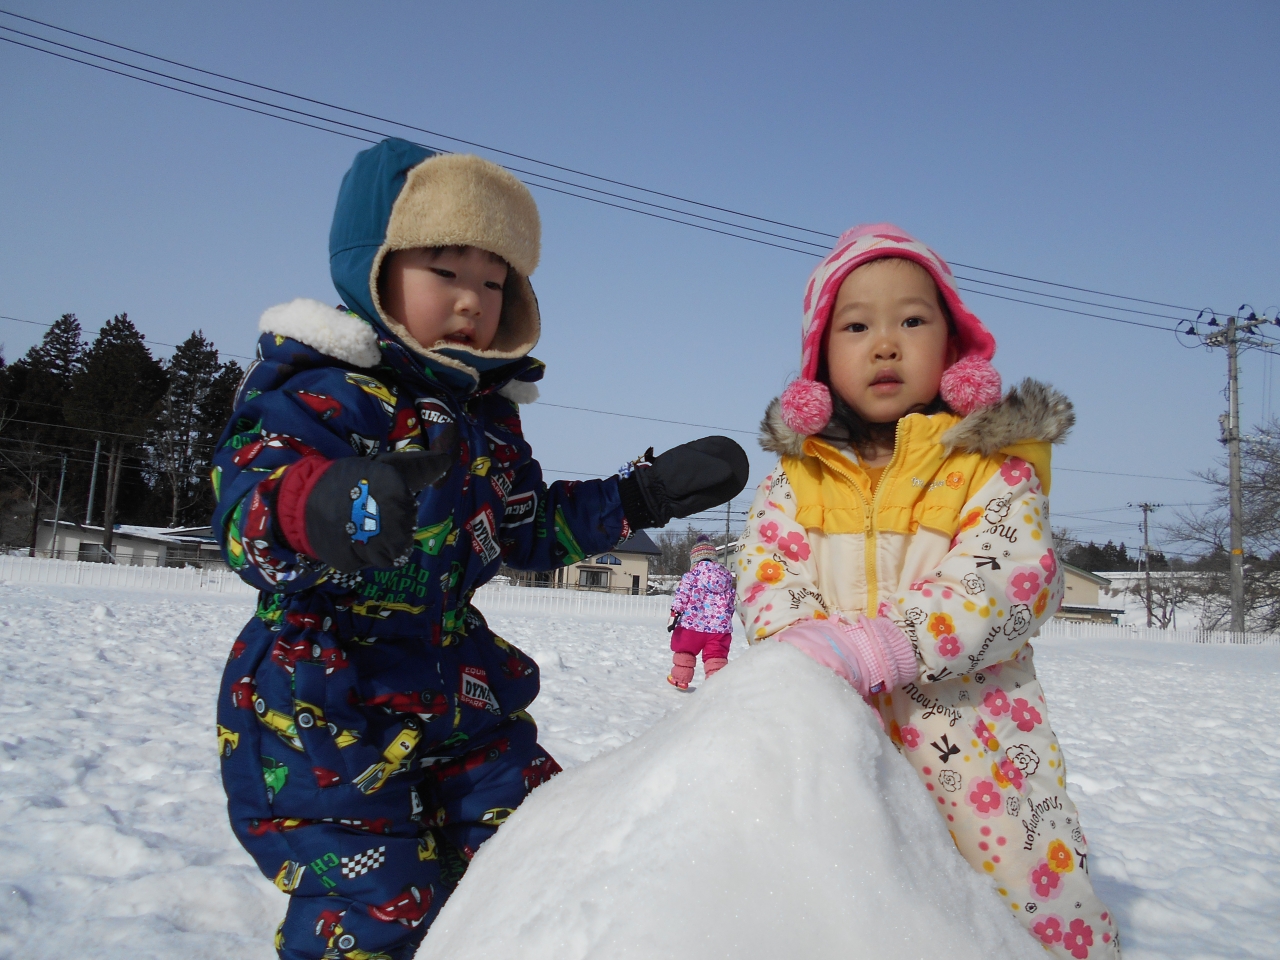 雪遊び 乳児組 イベント日記 米沢市のこども園 戸塚山こども園の公式ホームページ